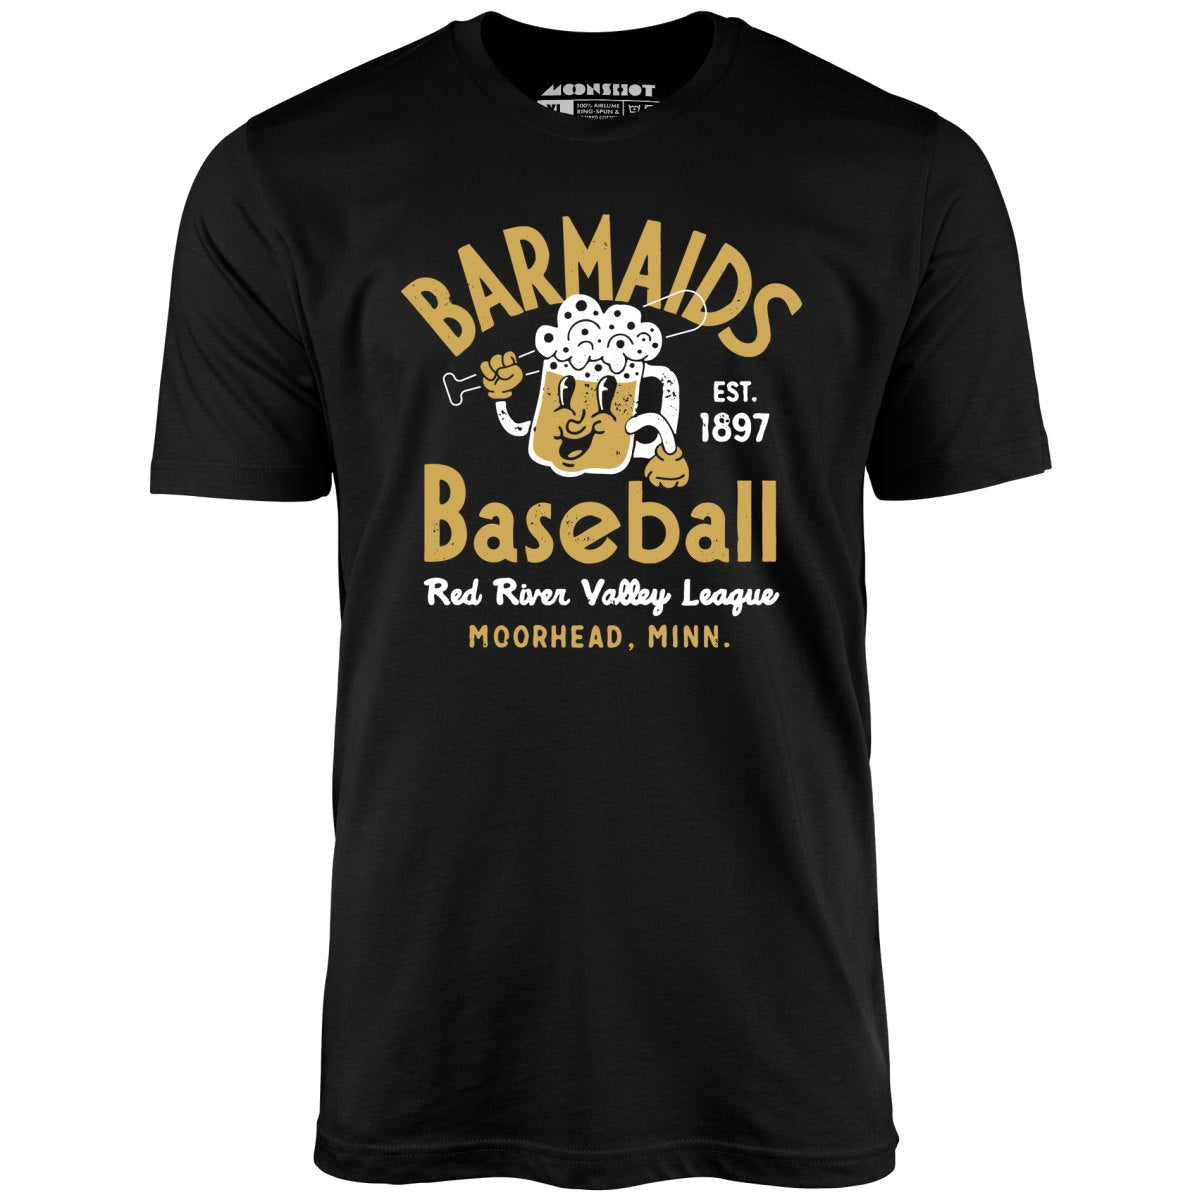 Moorhead Barmaids - Minnesota - Vintage Defunct Baseball Teams - Unisex T-Shirt